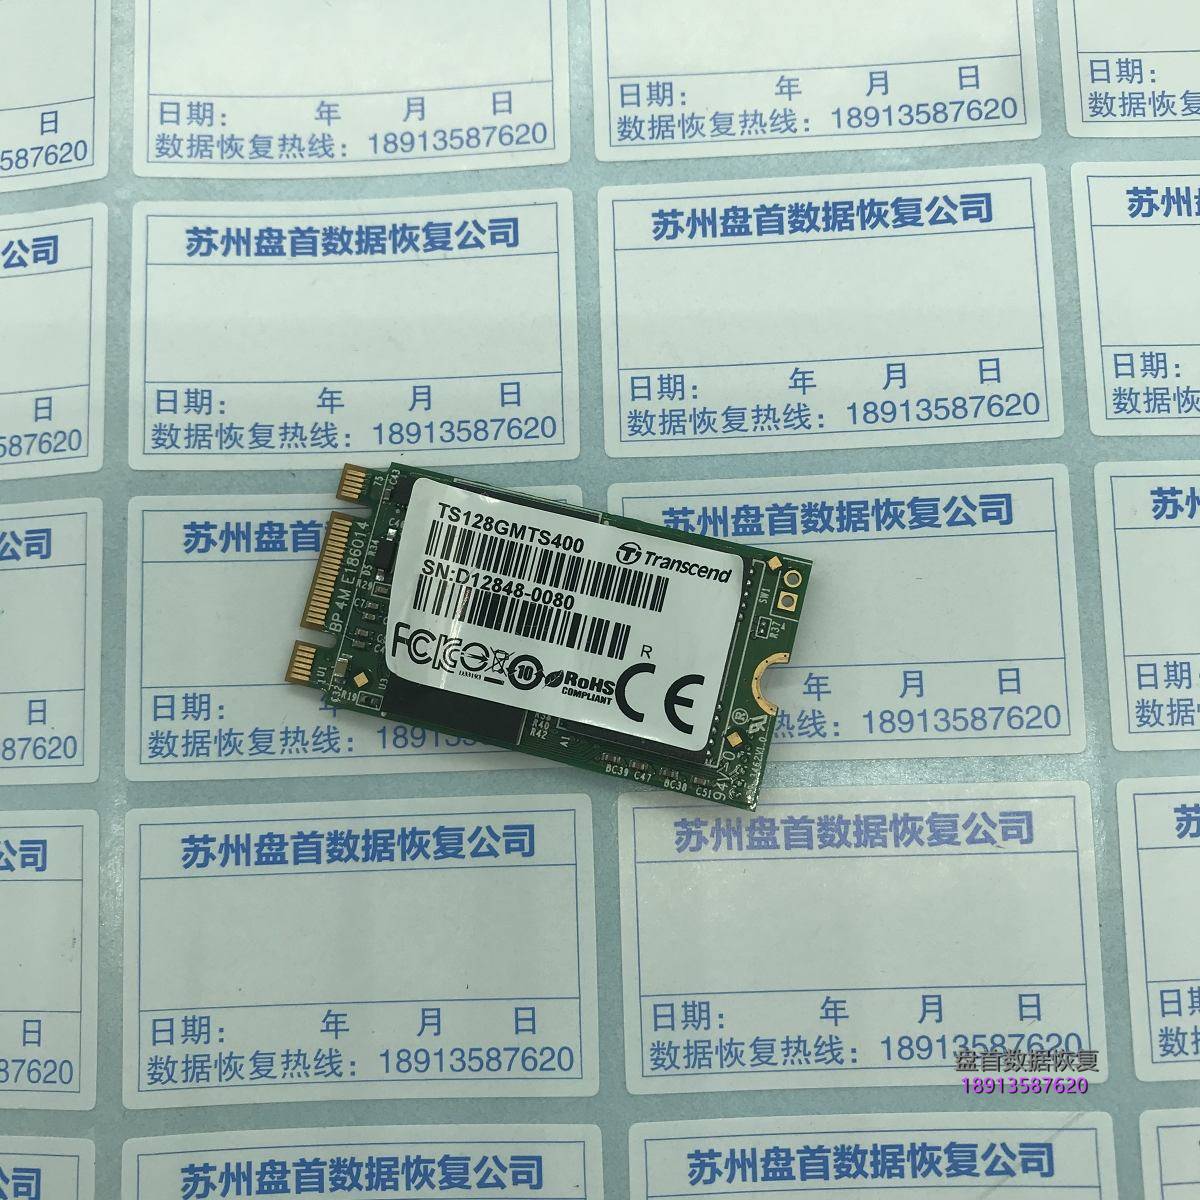 创见TS128GMTS400(128GB)SSD掉盘无法识别二次恢复成功